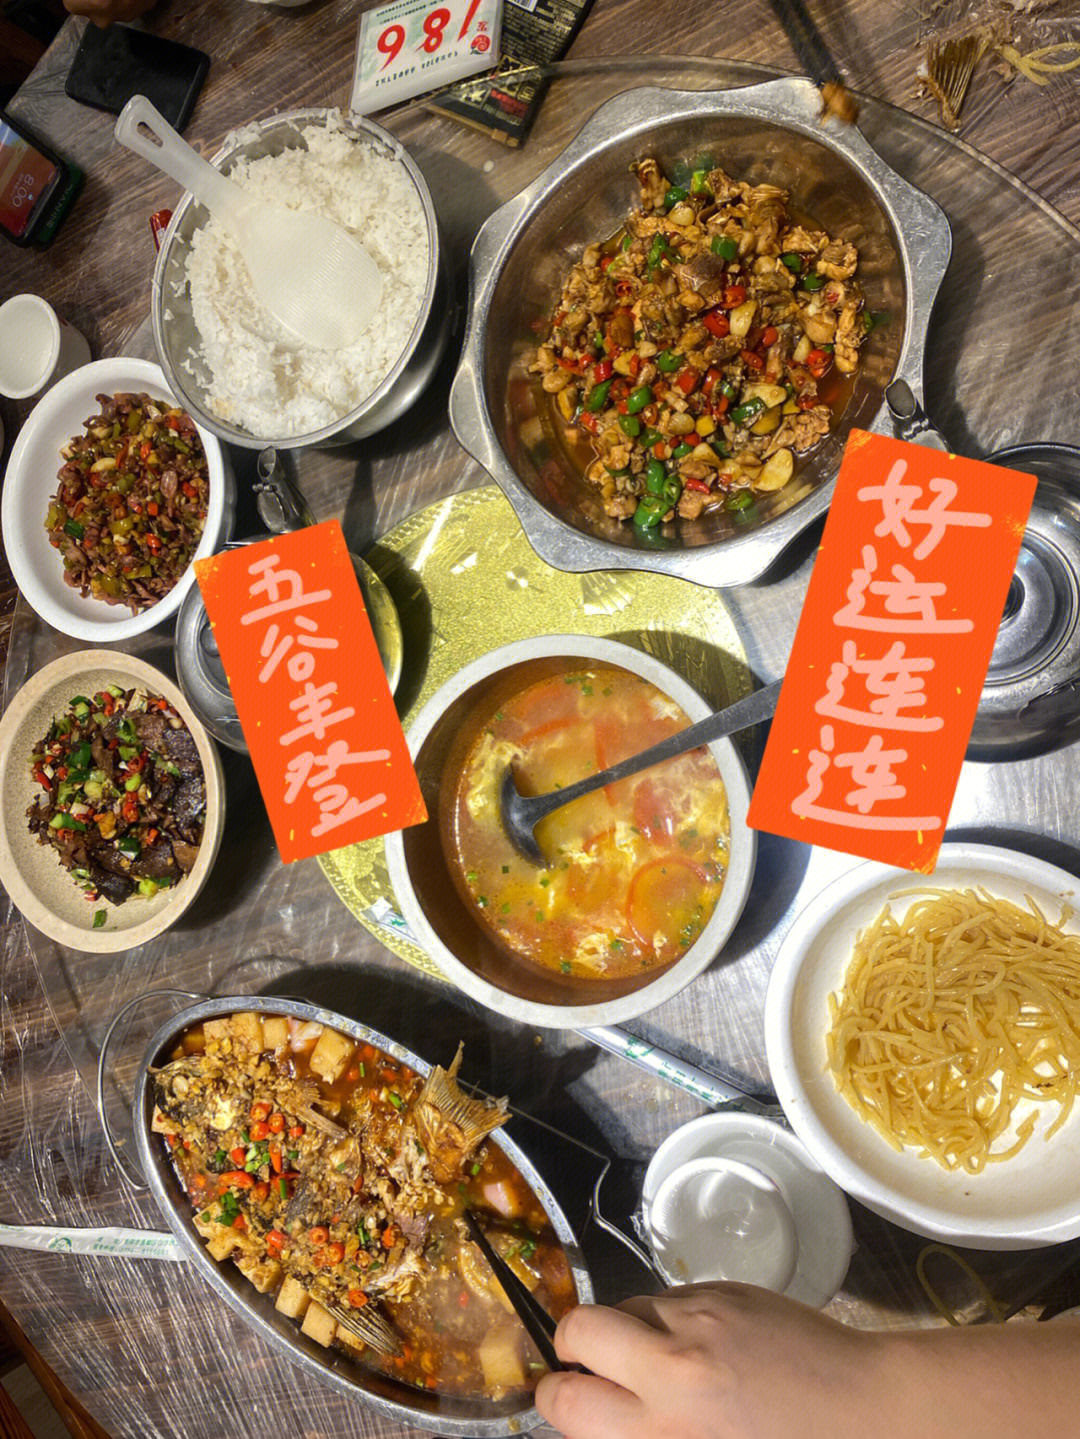 衡阳东风路巷子快餐图片